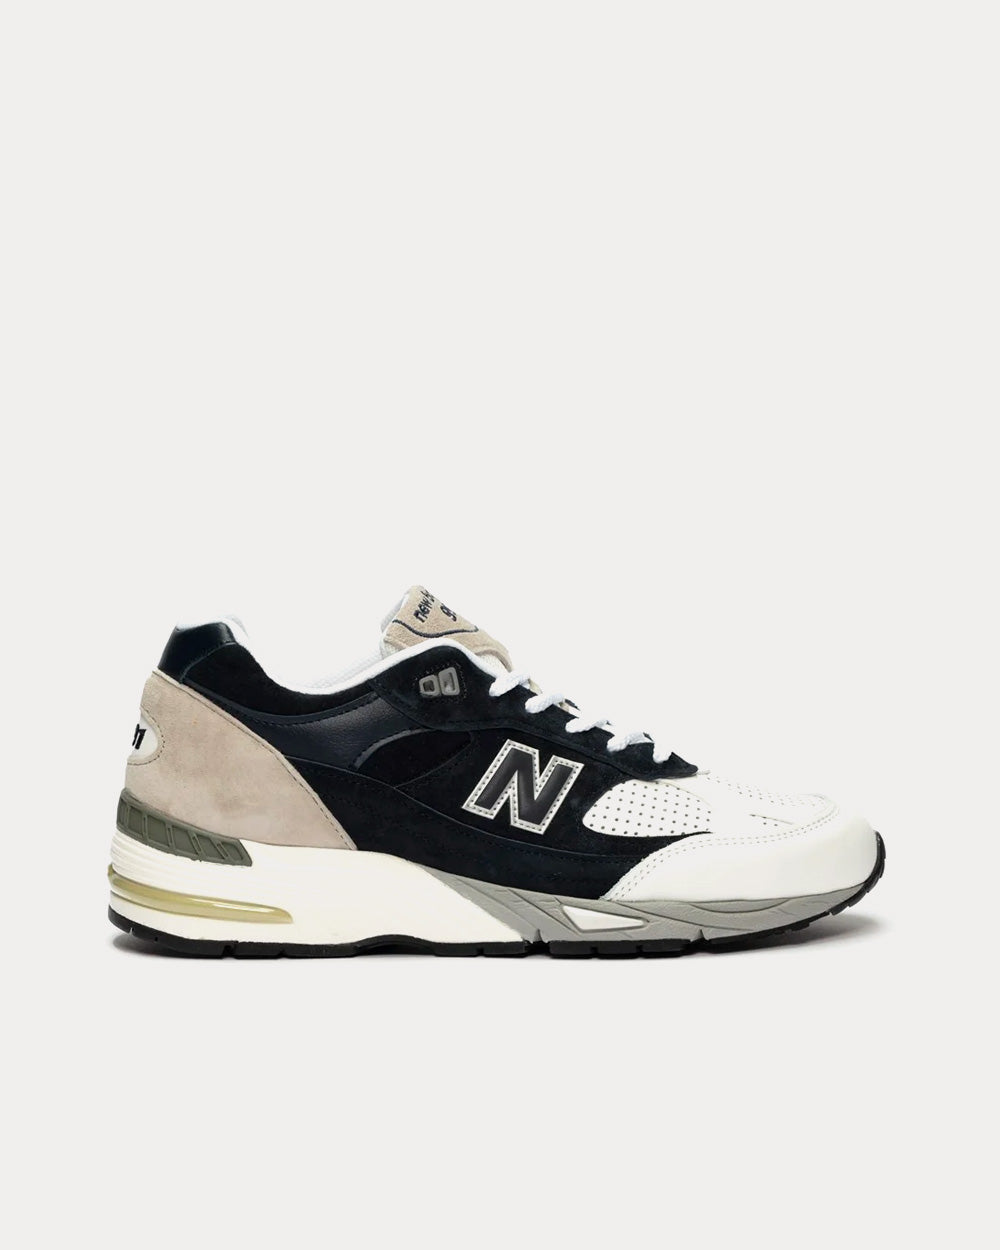 New Balance x SNS 991 Navy / White / Grey Low Top Sneakers - Sneak ...